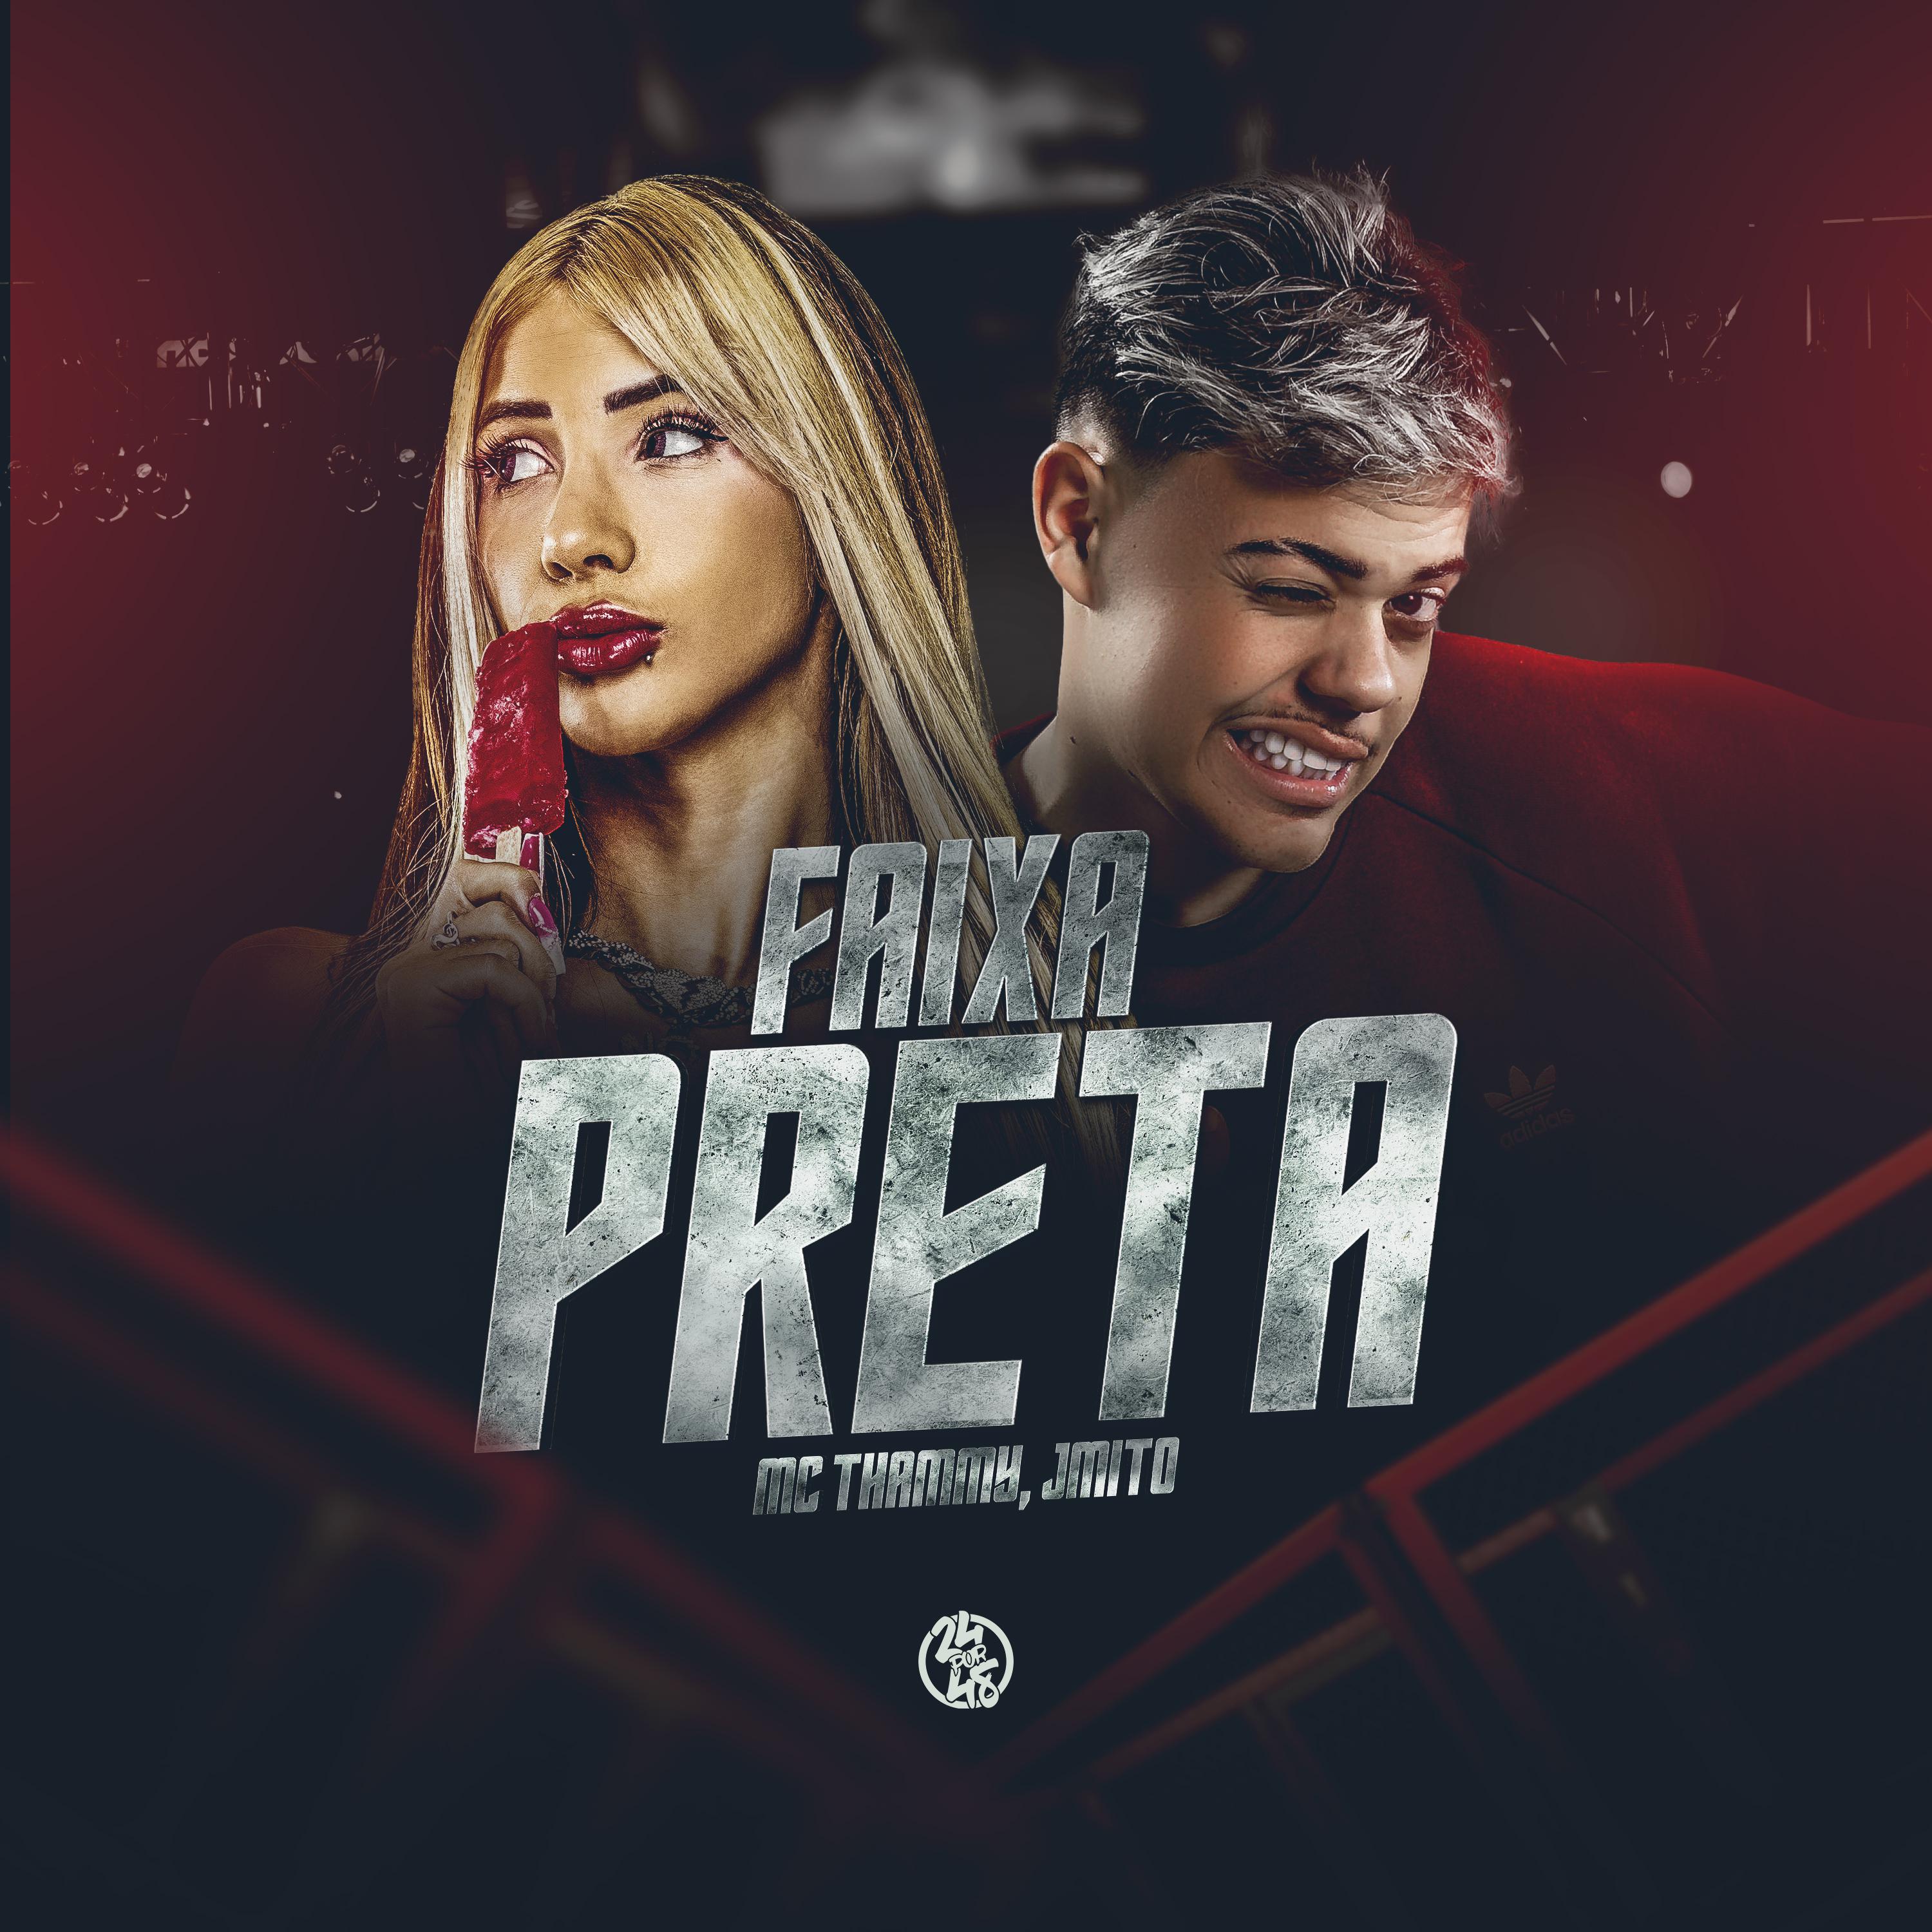 Постер альбома Faixa Preta